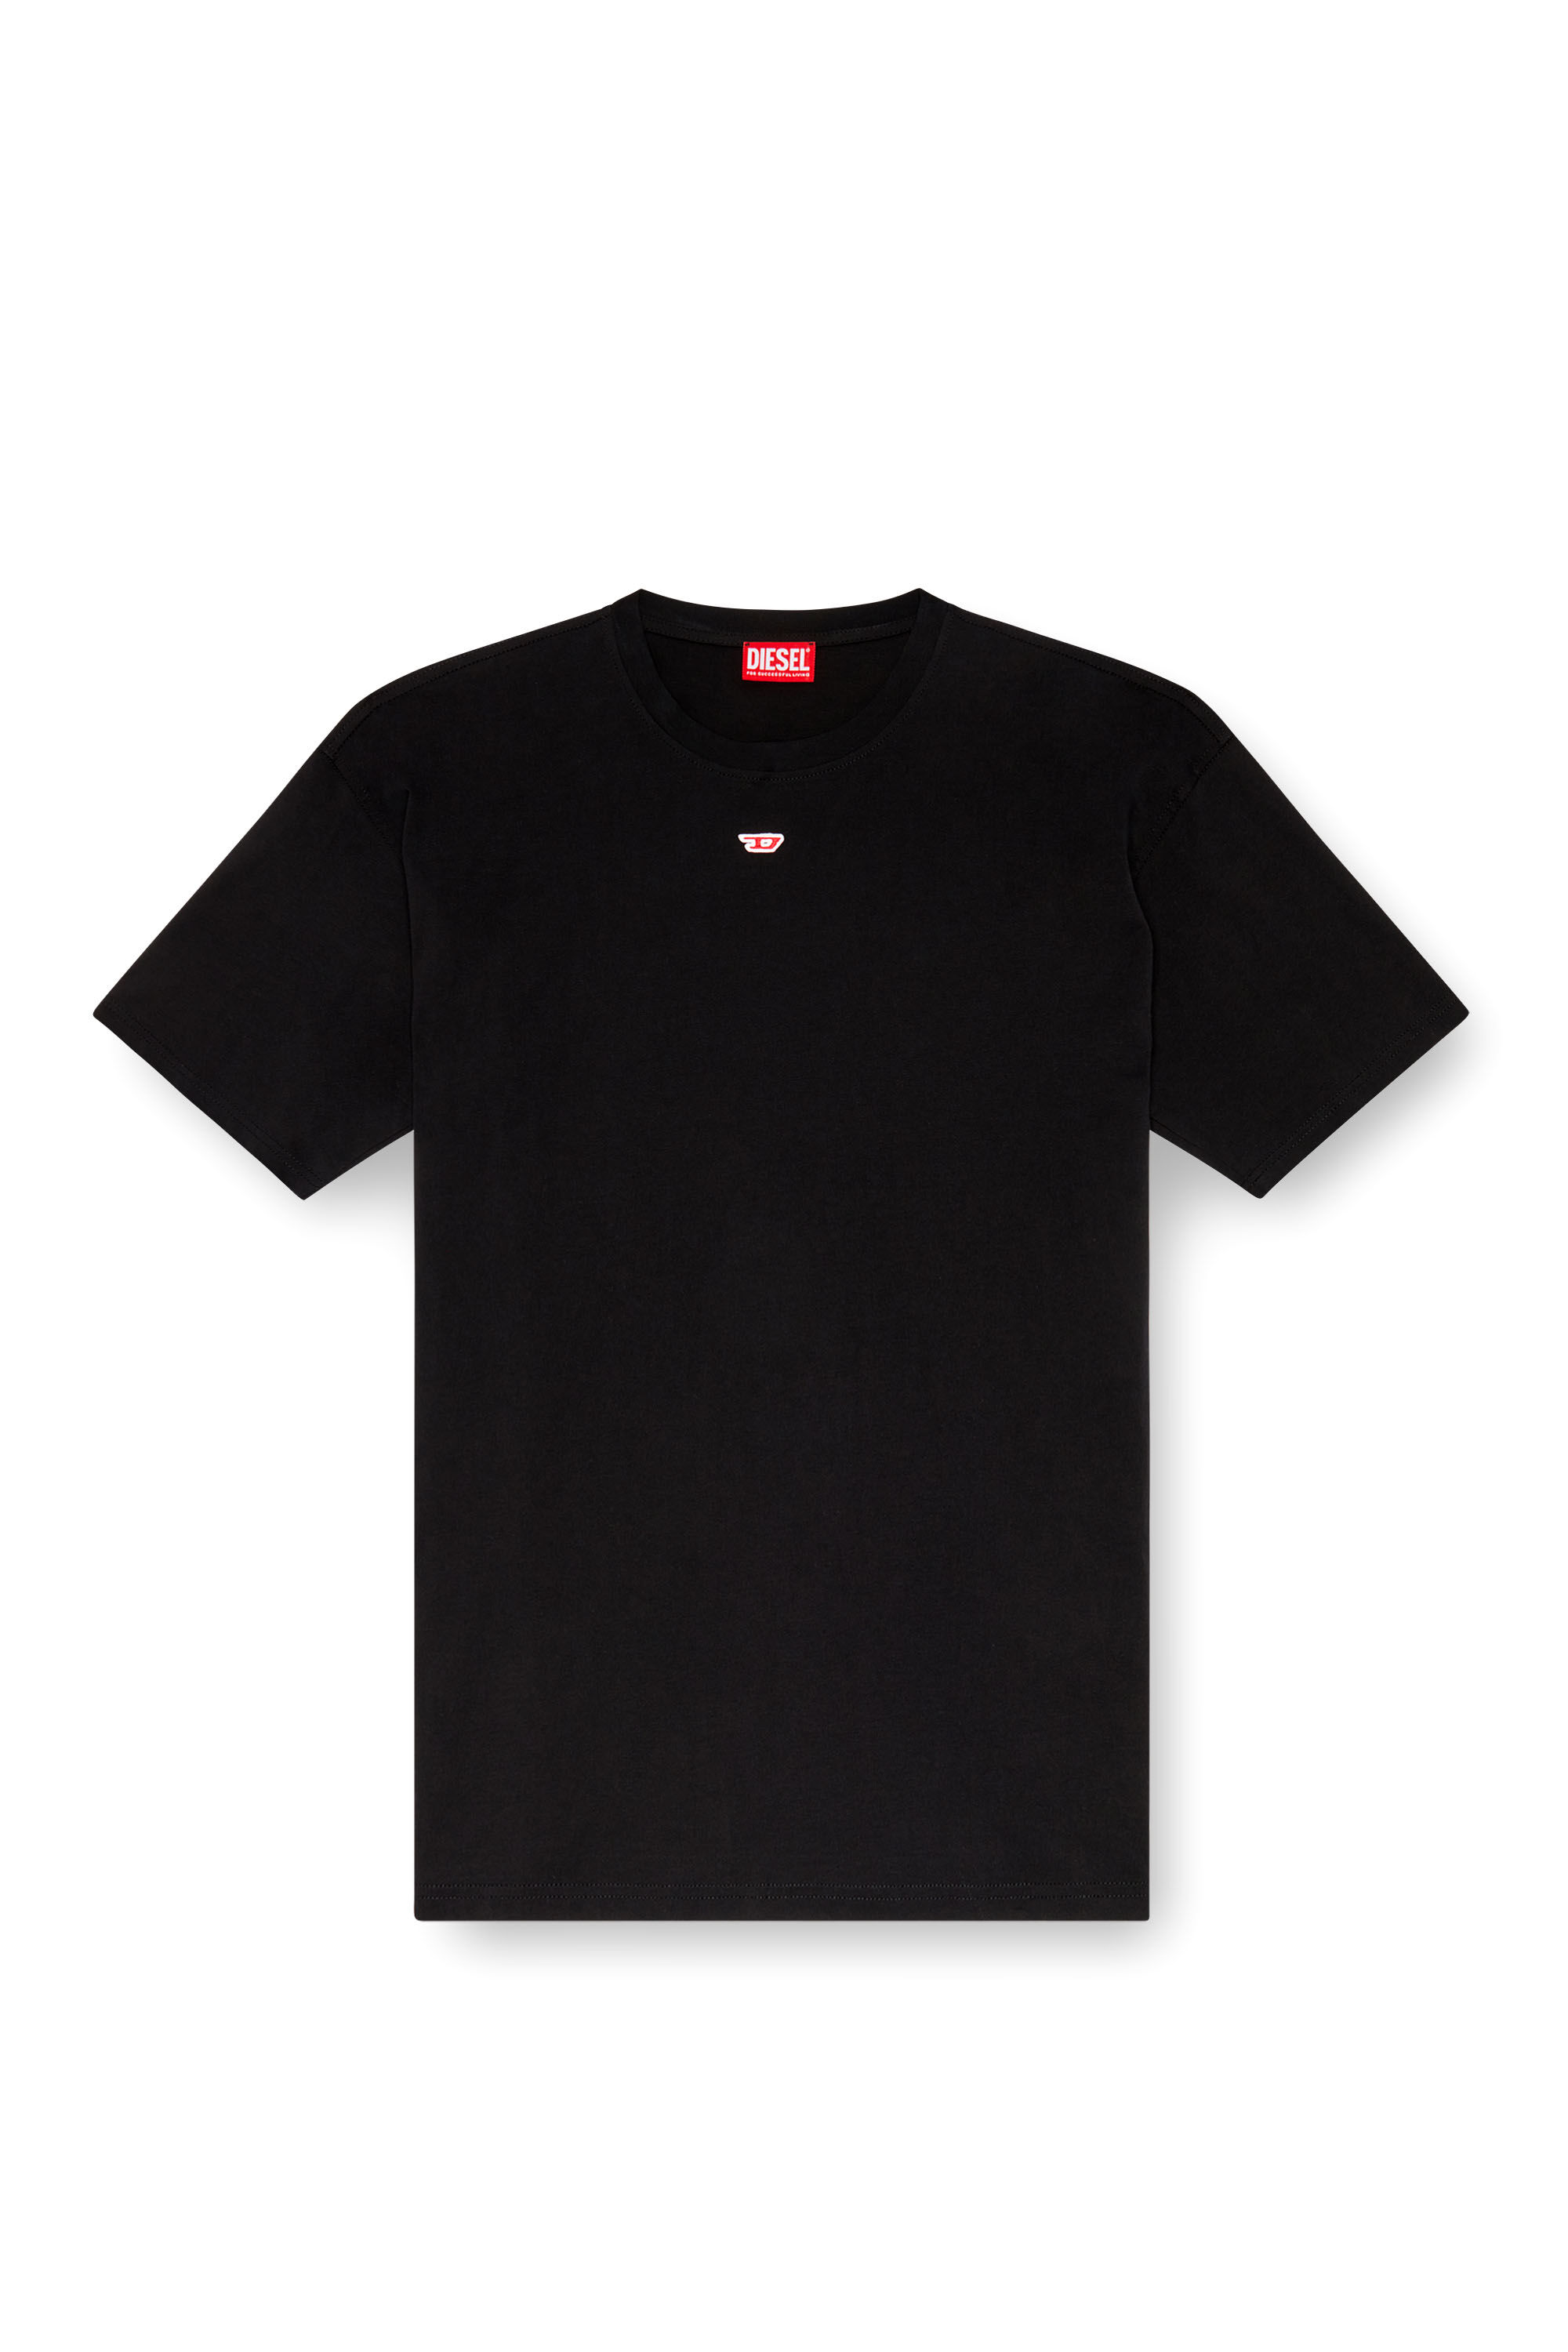 Diesel - T-BOXT-D, Mixte T-shirt avec empiècement D brodé in Noir - Image 2